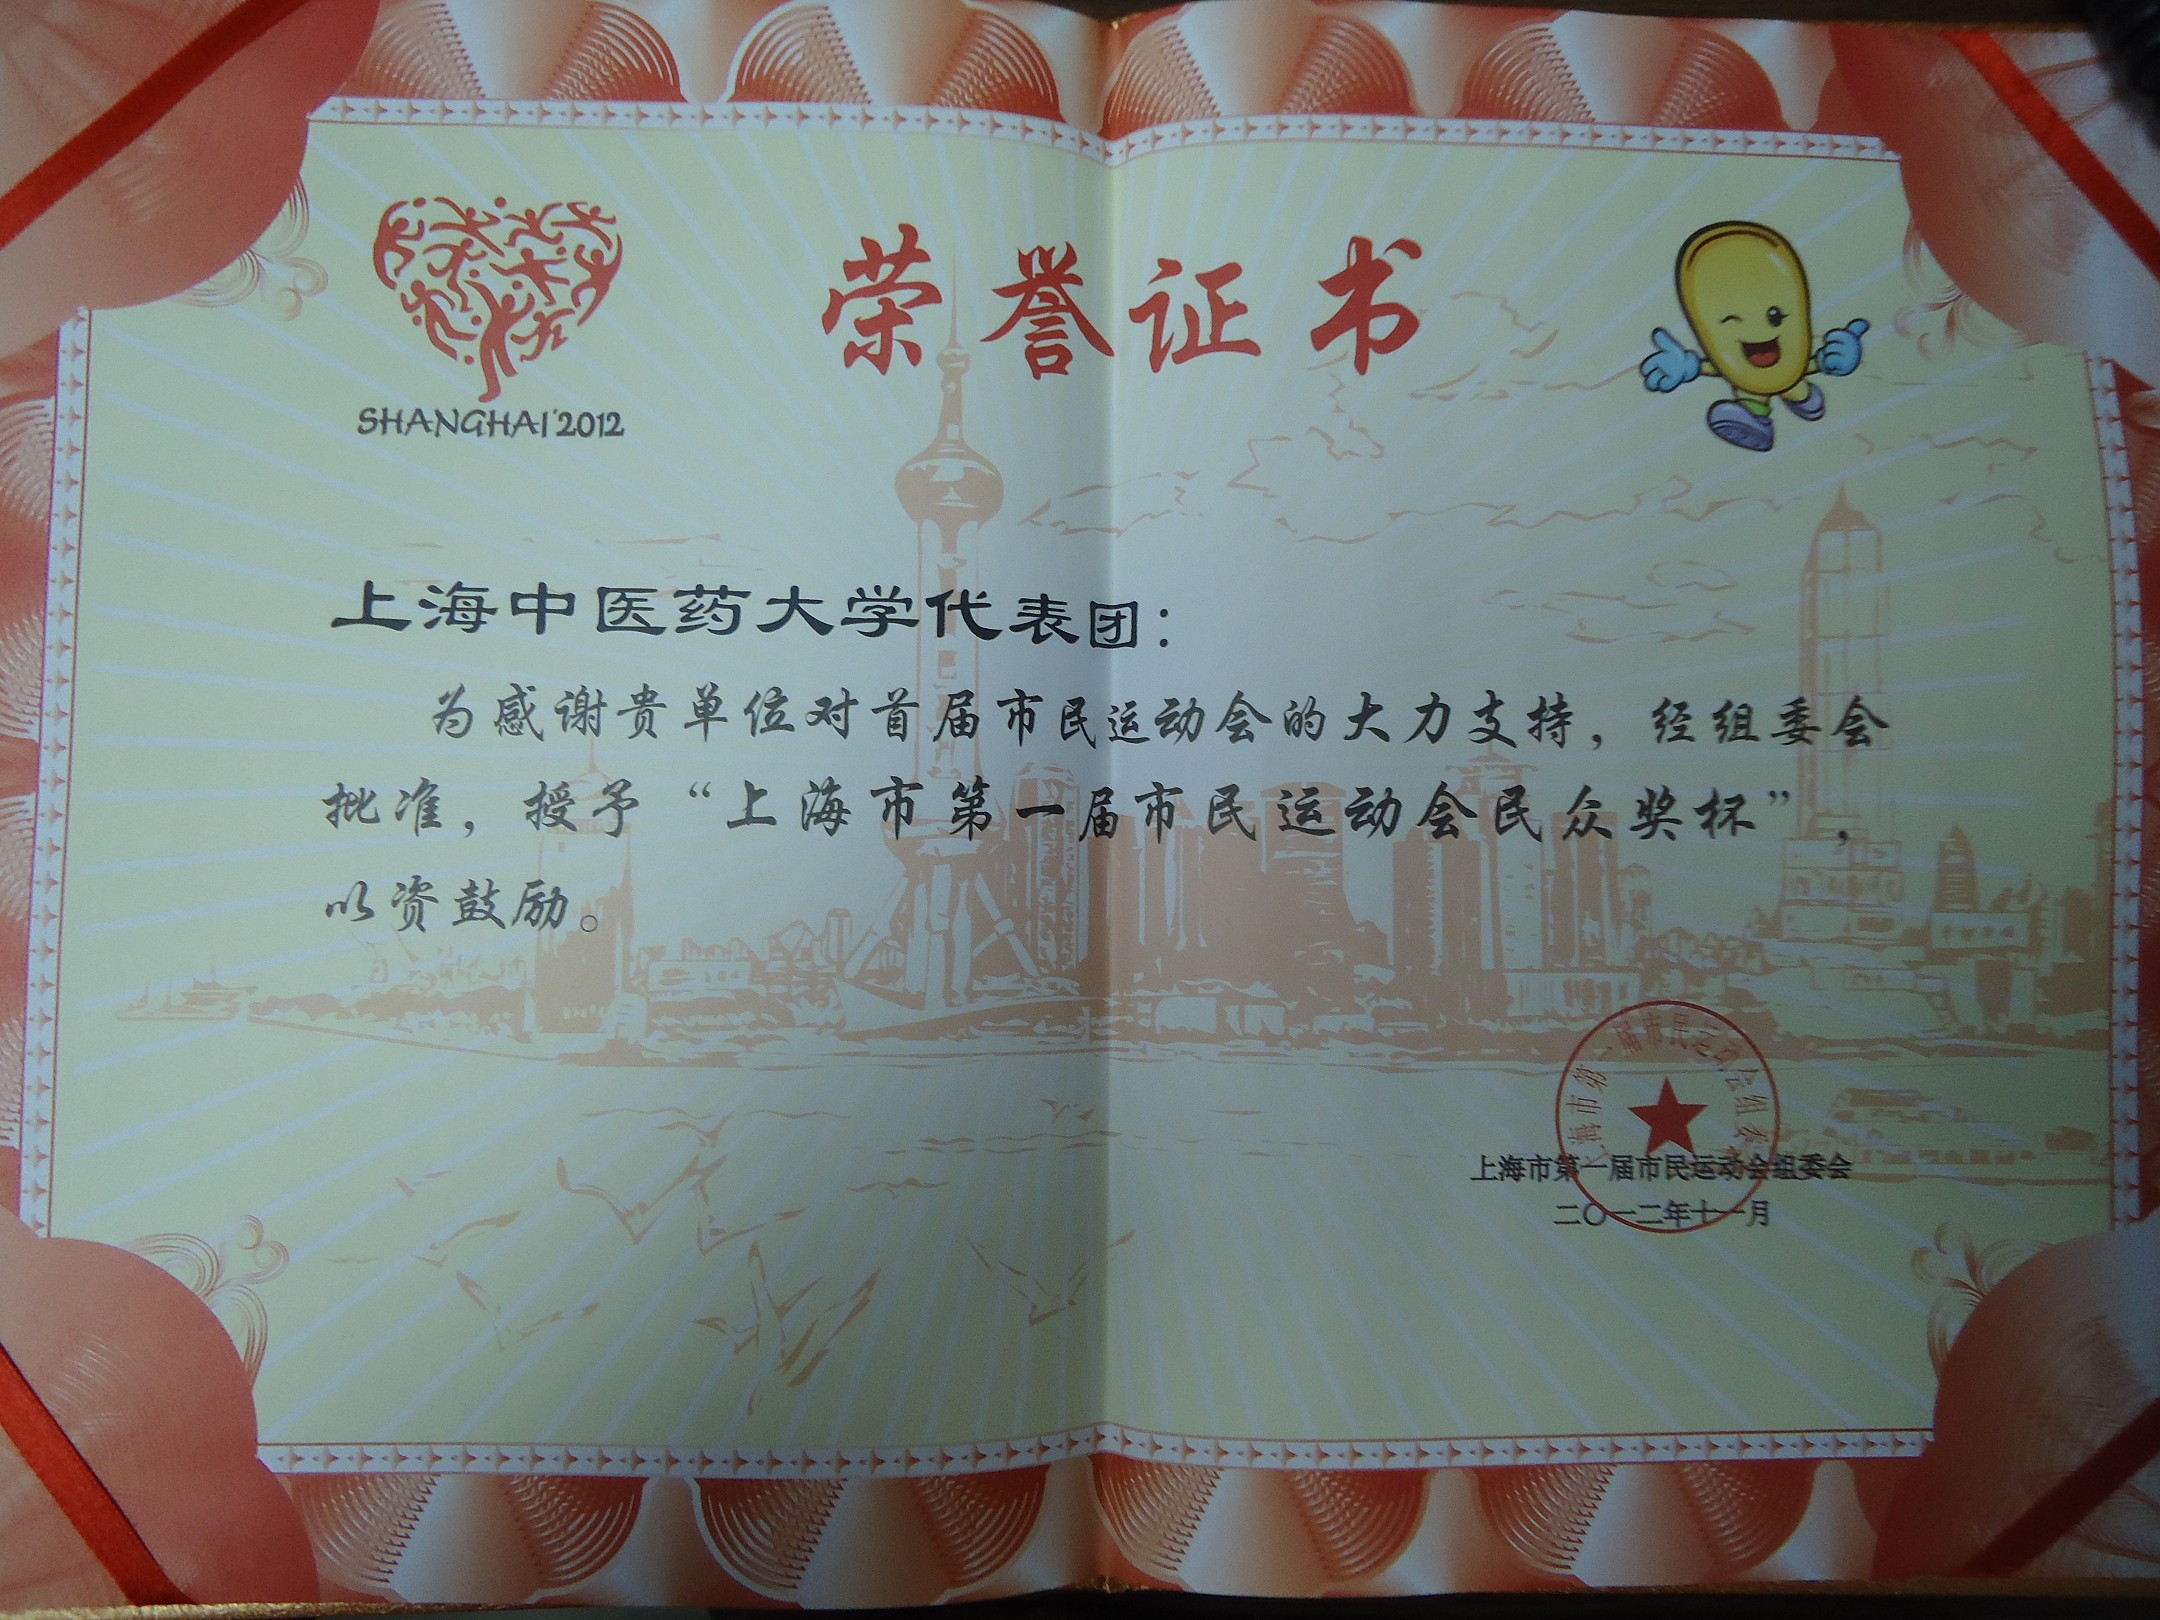 我校荣获“上海市第一届市民运动会民众奖杯”